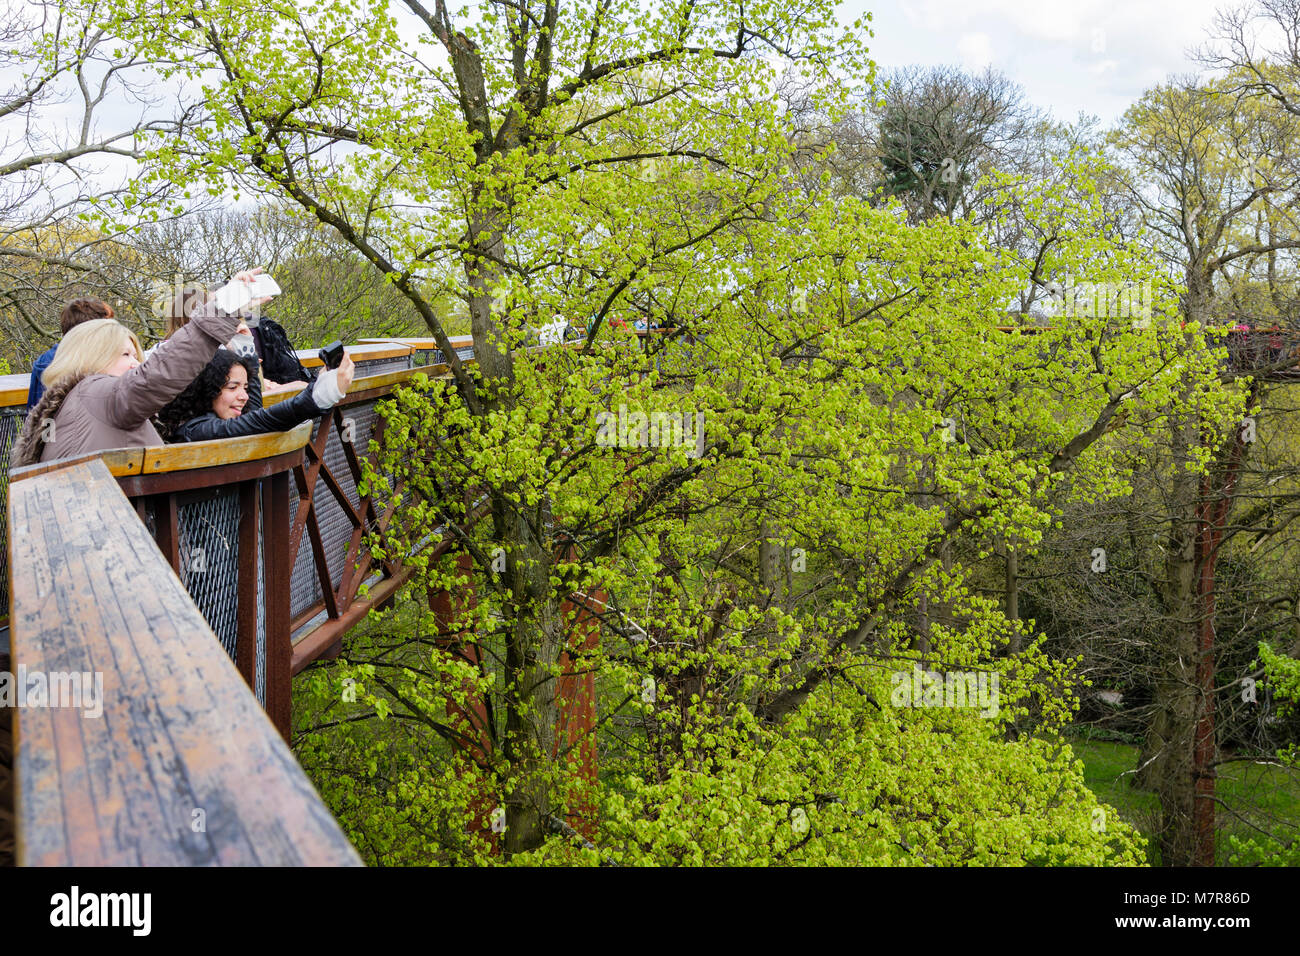 Londres, Royaume-Uni - 18 avril, 2014. Les touristes prendre des autoportraits Treetop Walkway à Kew Botanic Gardens. Banque D'Images